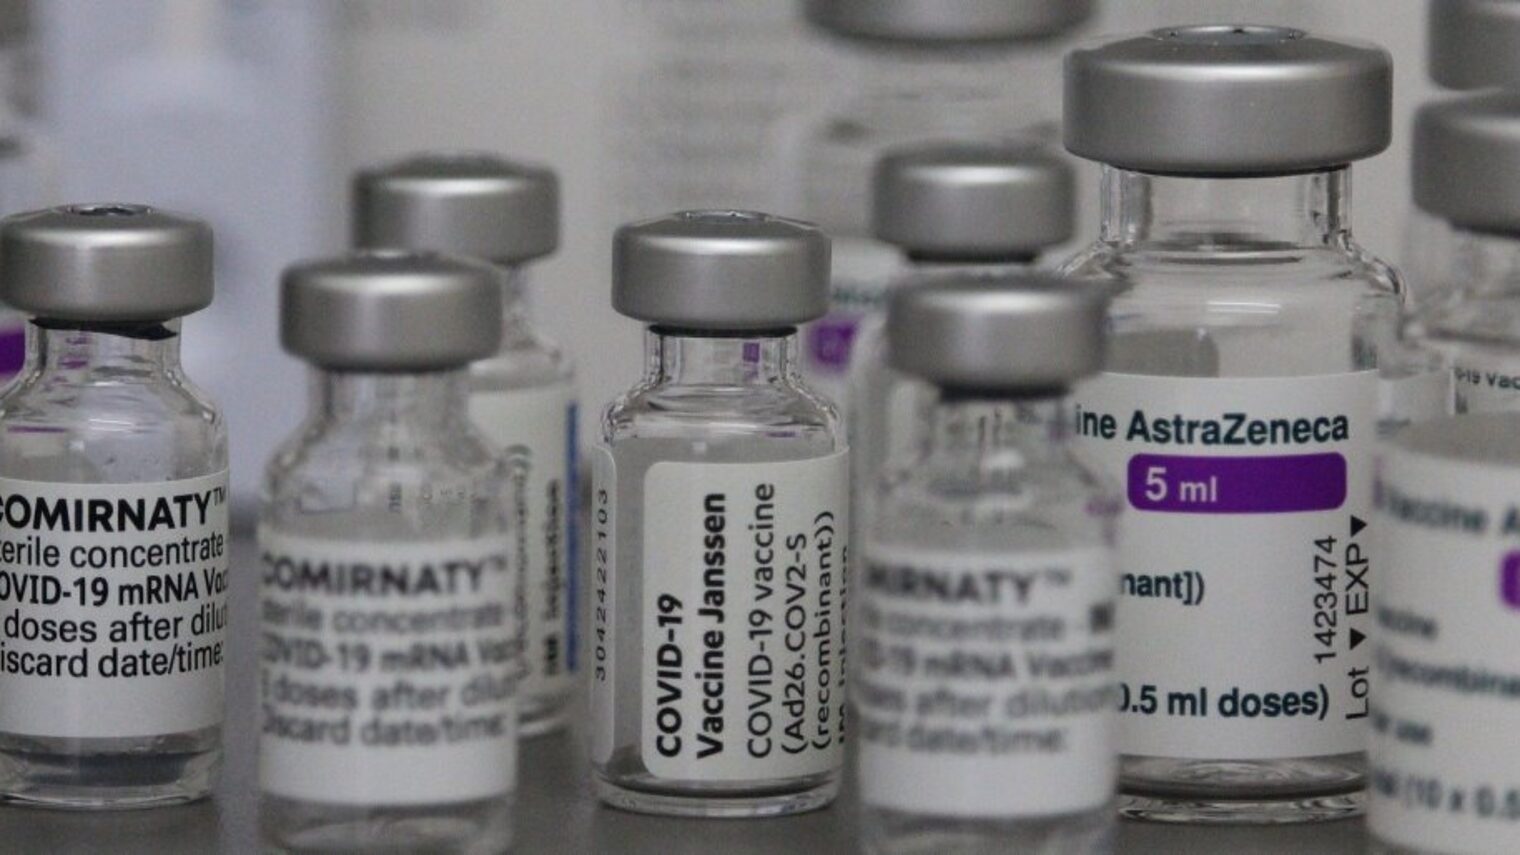 Kleine Fläschchen in verschiedenen Größen mit den Labels der Impfstoffe gegen Corona wie Comirnaty, Janssen und AstraZeneca.